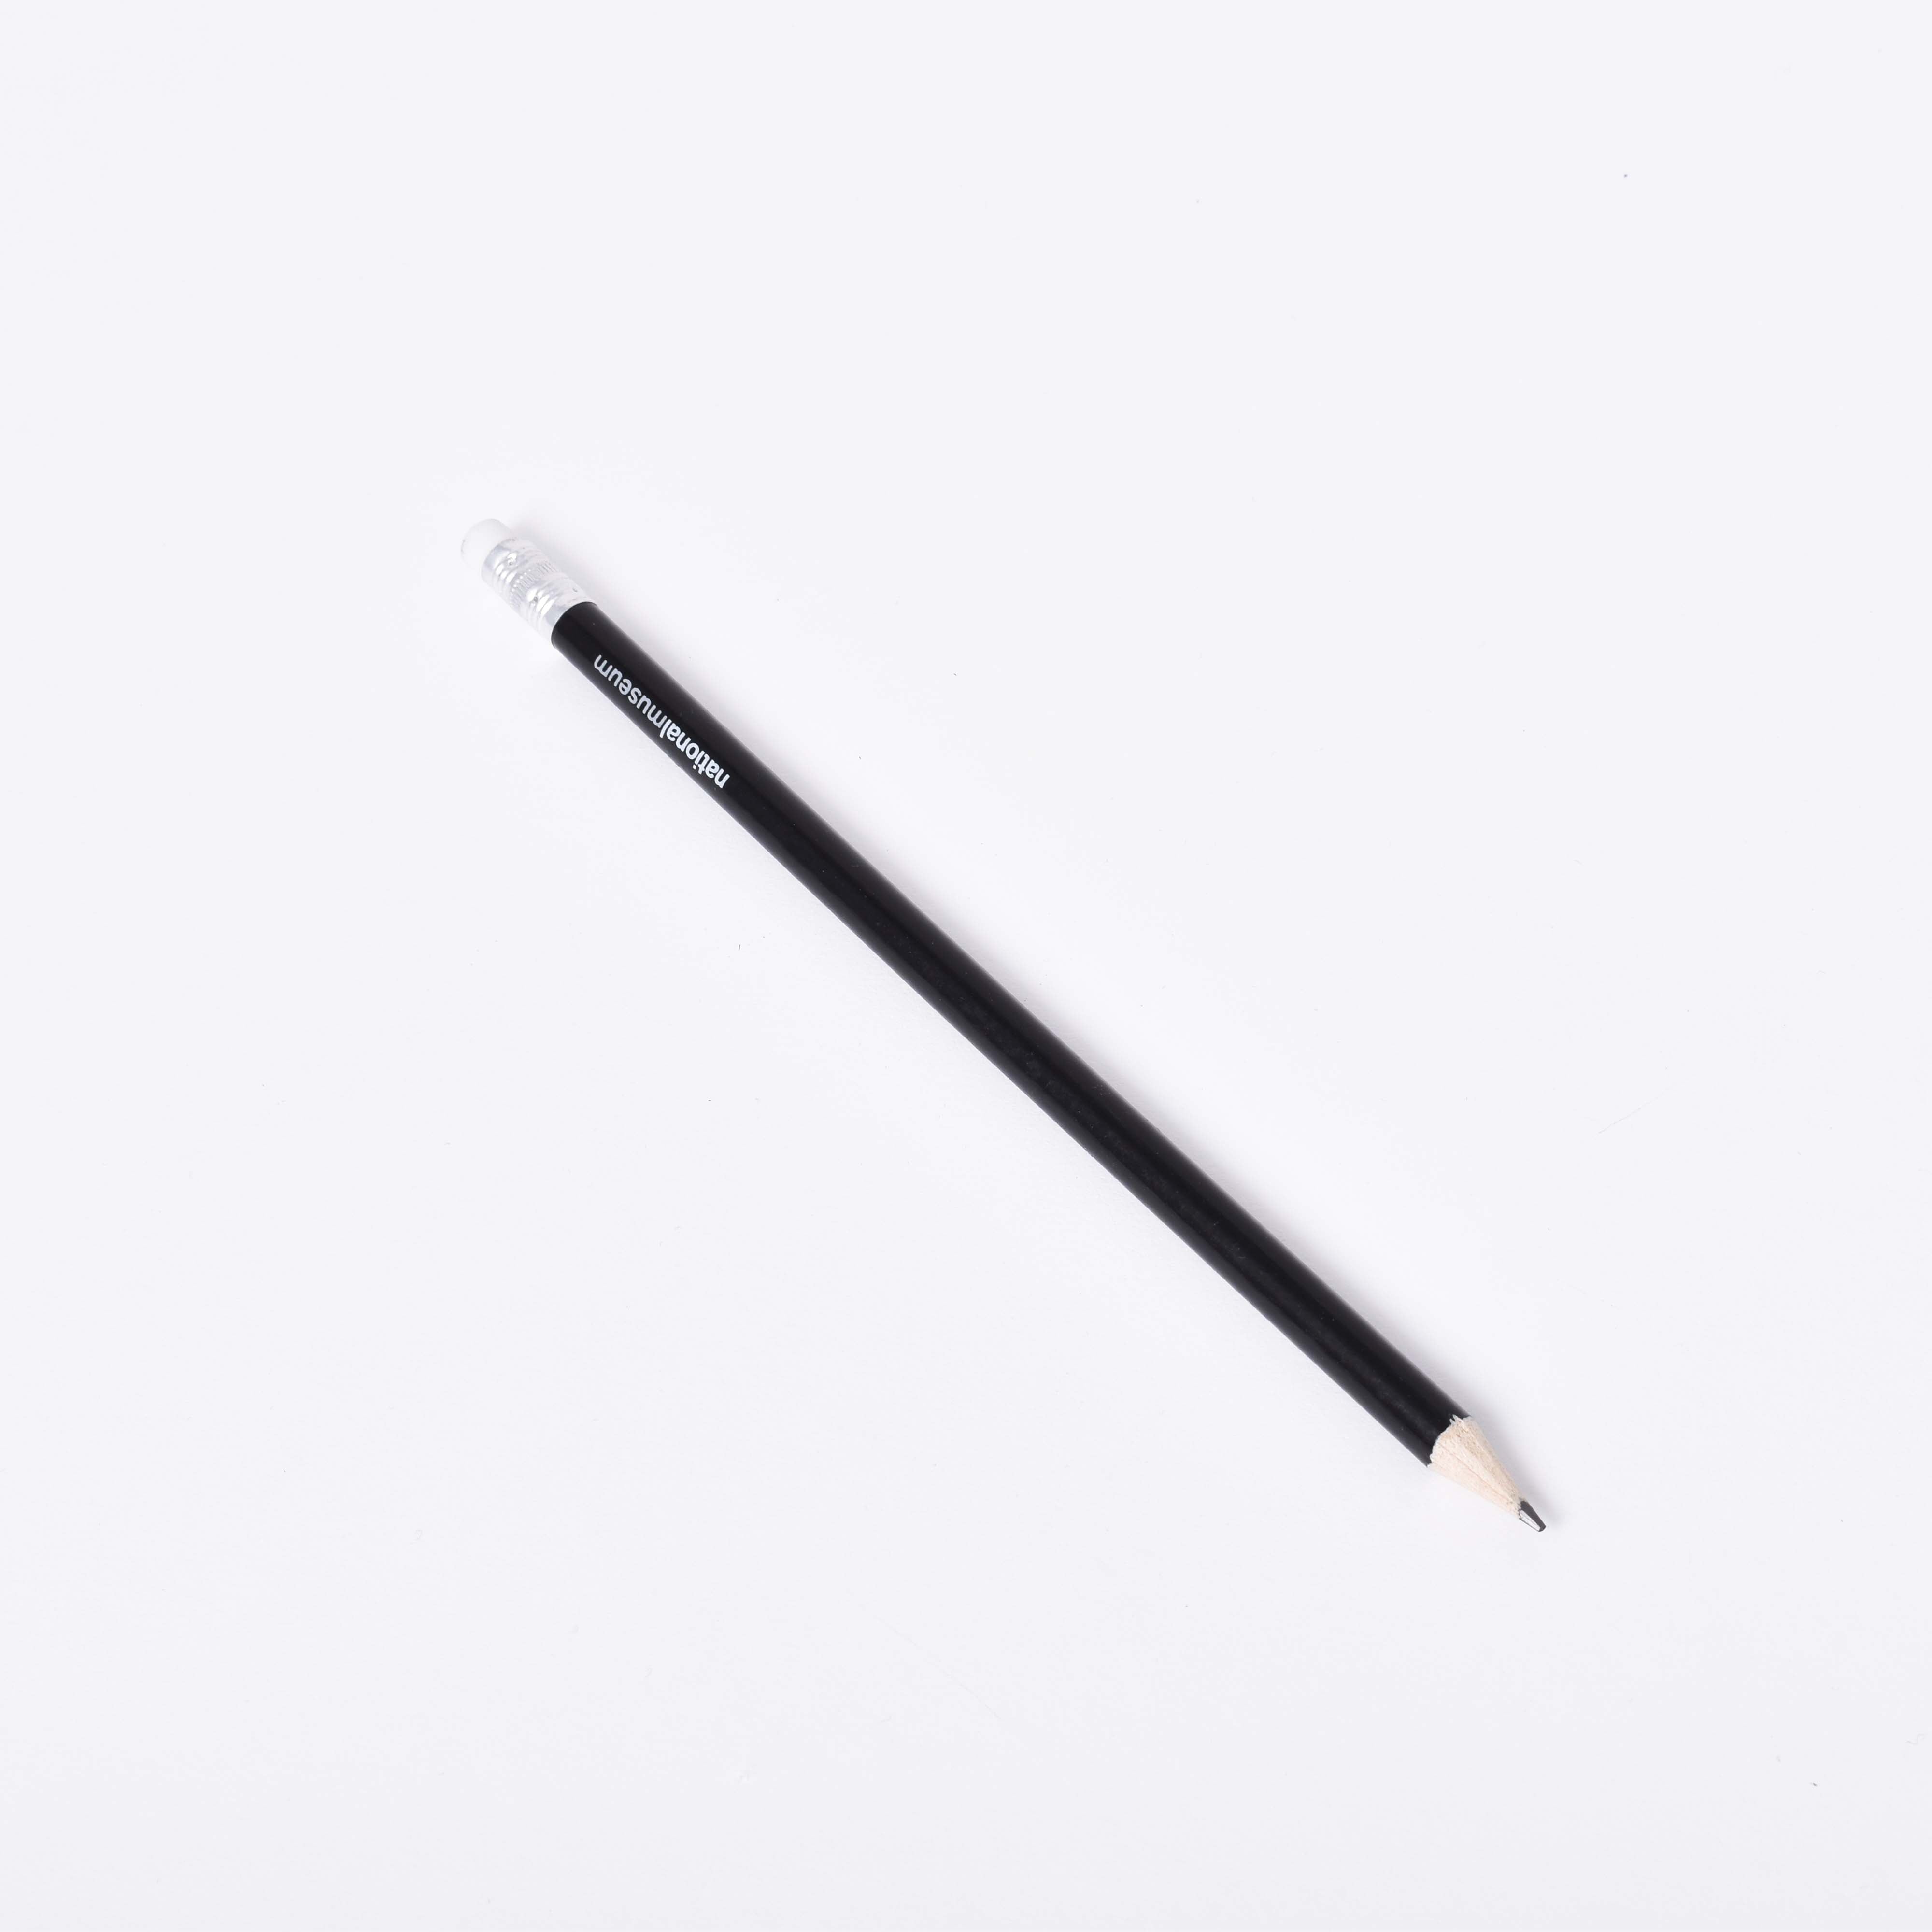 En svart blyertspenna med Nationalmuseums logga